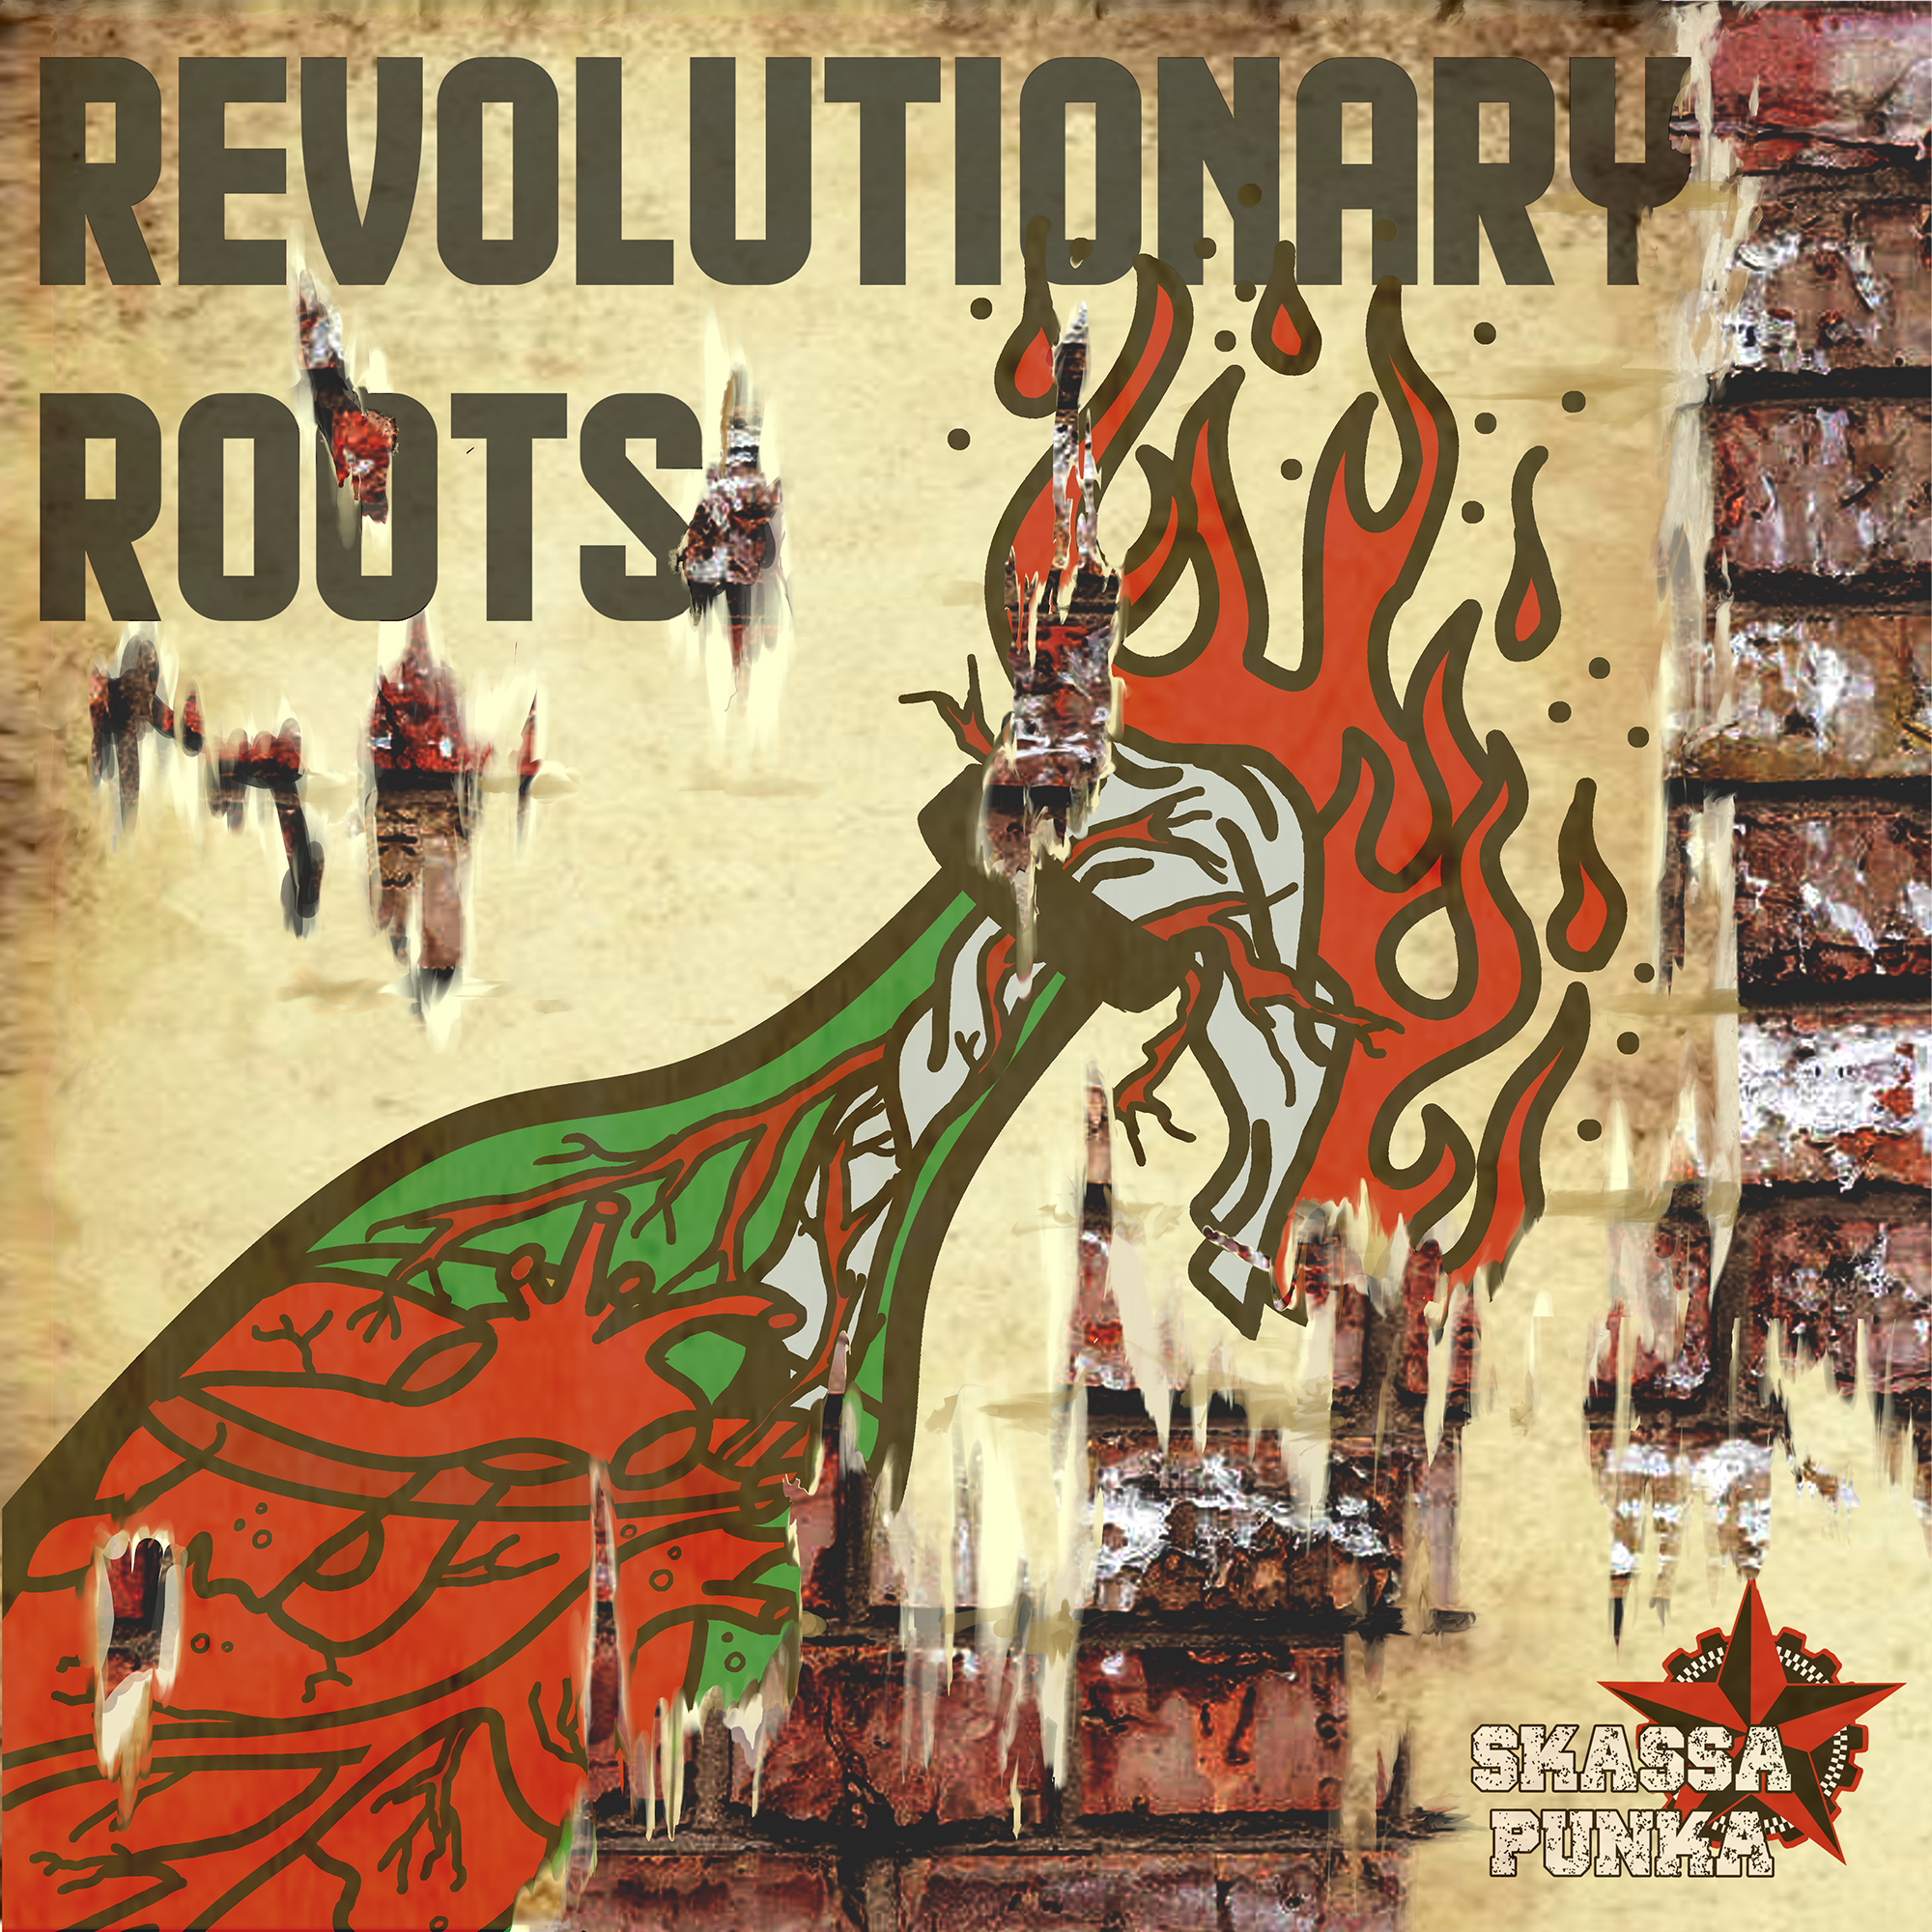 Reseña: Skassa Punka “Revolutionary Roots”